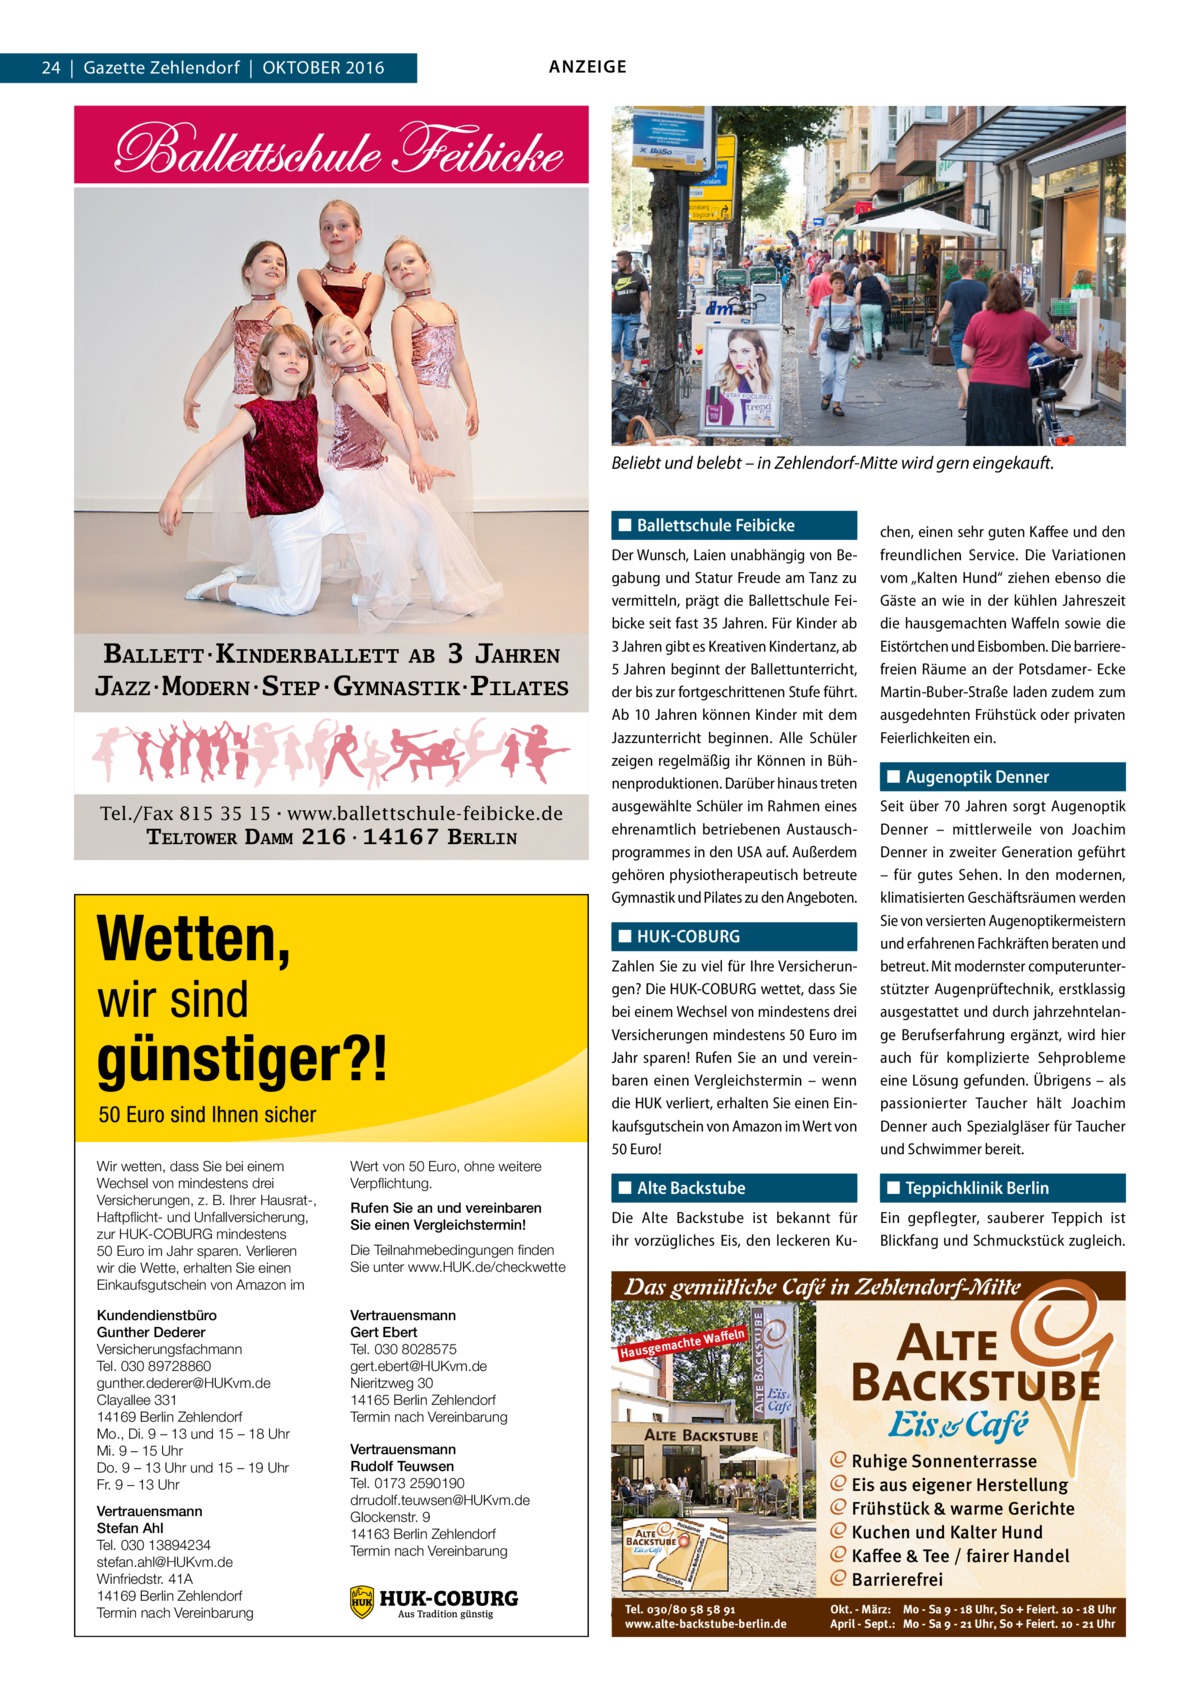 24  |  Gazette Zehlendorf  |  Oktober 2016  ANZEIGE  Beliebt und belebt – in Zehlendorf-Mitte wird gern eingekauft. ◼◼ Ballettschule Feibicke  BALLETT·KINDERBALLETT AB 3 JAHREN JAZZ·MODERN·STEP·GYMNASTIK·PILATES  Tel./Fax 815 35 15·www.ballettschule-feibicke.de  TELTOWER DAMM 216·14167 BERLIN  Der Wunsch, Laien unabhängig von Begabung und Statur Freude am Tanz zu vermitteln, prägt die Ballettschule Feibicke seit fast 35 Jahren. Für Kinder ab 3 Jahren gibt es Kreativen Kindertanz, ab 5 Jahren beginnt der Ballettunterricht, der bis zur fortgeschrittenen Stufe führt. Ab 10  Jahren können Kinder mit dem Jazzunterricht beginnen. Alle Schüler zeigen regelmäßig ihr Können in Bühnenproduktionen. Darüber hinaus treten ausgewählte Schüler im Rahmen eines ehrenamtlich betriebenen Austauschprogrammes in den USA auf. Außerdem gehören physiotherapeutisch betreute Gymnastik und Pilates zu den Angeboten.  ◼◼ HUK-COBURG  Wir wetten, dass Sie bei einem Wechsel von mindestens drei Versicherungen, z. B. Ihrer Hausrat-, Haftpflicht- und Unfallversicherung, zur HUK-COBURG mindestens 50 Euro im Jahr sparen. Verlieren wir die Wette, erhalten Sie einen Einkaufsgutschein von Amazon im  Wert von 50 Euro, ohne weitere Verpflichtung.  Kundendienstbüro Gunther Dederer Versicherungsfachmann Tel. 030 89728860 gunther.dederer@HUKvm.de Clayallee 331 14169 Berlin Zehlendorf Mo., Di. 9 – 13 und 15 – 18 Uhr Mi. 9 – 15 Uhr Do. 9 – 13 Uhr und 15 – 19 Uhr Fr. 9 – 13 Uhr  Vertrauensmann Gert Ebert Tel. 030 8028575 gert.ebert@HUKvm.de Nieritzweg 30 14165 Berlin Zehlendorf Termin nach Vereinbarung  Vertrauensmann Stefan Ahl Tel. 030 13894234 stefan.ahl@HUKvm.de Winfriedstr. 41A 14169 Berlin Zehlendorf Termin nach Vereinbarung  Rufen Sie an und vereinbaren Sie einen Vergleichstermin! Die Teilnahmebedingungen finden Sie unter www.HUK.de/checkwette  Zahlen Sie zu viel für Ihre Versicherungen? Die HUK-COBURG wettet, dass Sie bei einem Wechsel von mindestens drei Versicherungen mindestens 50 Euro im Jahr sparen! Rufen Sie an und vereinbaren einen Vergleichstermin – wenn die HUK verliert, erhalten Sie einen Einkaufsgutschein von Amazon im Wert von 50 Euro!  ◼◼ Alte Backstube  chen, einen sehr guten Kaffee und den freundlichen Service. Die Variationen vom „Kalten Hund“ ziehen ebenso die Gäste an wie in der kühlen Jahreszeit die hausgemachten Waffeln sowie die Eistörtchen und Eisbomben. Die barriere­ freien Räume an der Potsdamer- Ecke Martin-Buber-Straße laden zudem zum ausgedehnten Frühstück oder privaten Feierlichkeiten ein.  ◼◼ Augenoptik Denner Seit über 70  Jahren sorgt Augenoptik Denner – mittlerweile von Joachim Denner in zweiter Generation geführt – für gutes Sehen. In den modernen, klimatisierten Geschäftsräumen werden Sie von versierten Augenoptikermeistern und erfahrenen Fachkräften beraten und betreut. Mit modernster computerunterstützter Augenprüftechnik, erstklassig ausgestattet und durch jahrzehntelange Berufserfahrung ergänzt, wird hier auch für komplizierte Sehprobleme eine Lösung gefunden. Übrigens – als passionierter Taucher hält Joachim ­Denner auch Spezialgläser für Taucher und Schwimmer bereit.  ◼◼ Teppichklinik Berlin  Die Alte Backstube ist bekannt für ihr vorzügliches Eis, den leckeren Ku Ein gepflegter, sauberer Teppich ist Blickfang und Schmuckstück zugleich.  Das gemütliche Café in Zehlendorf-Mitte Waﬀeln machte Hausge  Vertrauensmann Rudolf Teuwsen Tel. 0173 2590190 drrudolf.teuwsen@HUKvm.de Glockenstr. 9 14163 Berlin Zehlendorf Termin nach Vereinbarung  Ruhige Sonnenterrasse Eis aus eigener Herstellung Frühstück & warme Gerichte Kuchen und Kalter Hund Kaﬀee & Tee / fairer Handel Barrierefrei Tel. 030/80 58 58 91 www.alte-backstube-berlin.de  Okt. - März: Mo - Sa 9 - 18 Uhr, So + Feiert. 10 - 18 Uhr April - Sept.: Mo - Sa 9 - 21 Uhr, So + Feiert. 10 - 21 Uhr